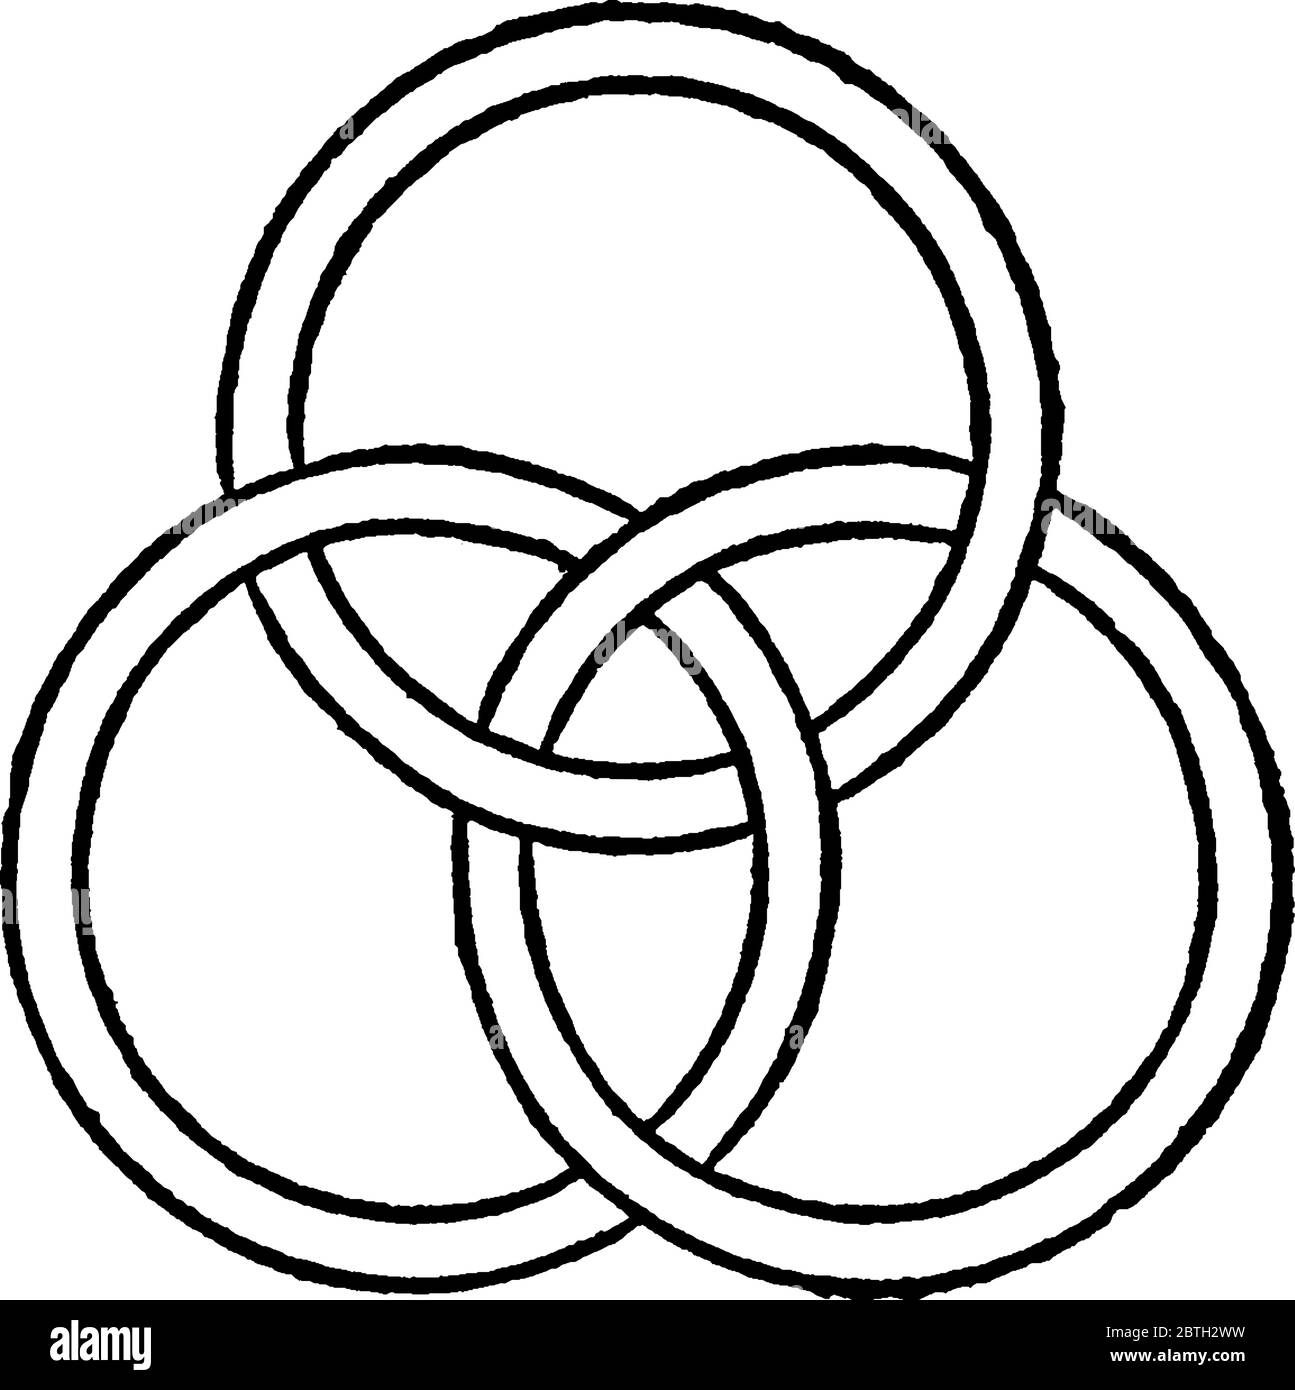 Eine Abbildung eines Knotens, dargestellt durch drei geschlossene Ebenen Kurven, von denen keine doppelte Punkte hat und von denen keine zwei sich schneiden, Vintage-Linie dra Stock Vektor